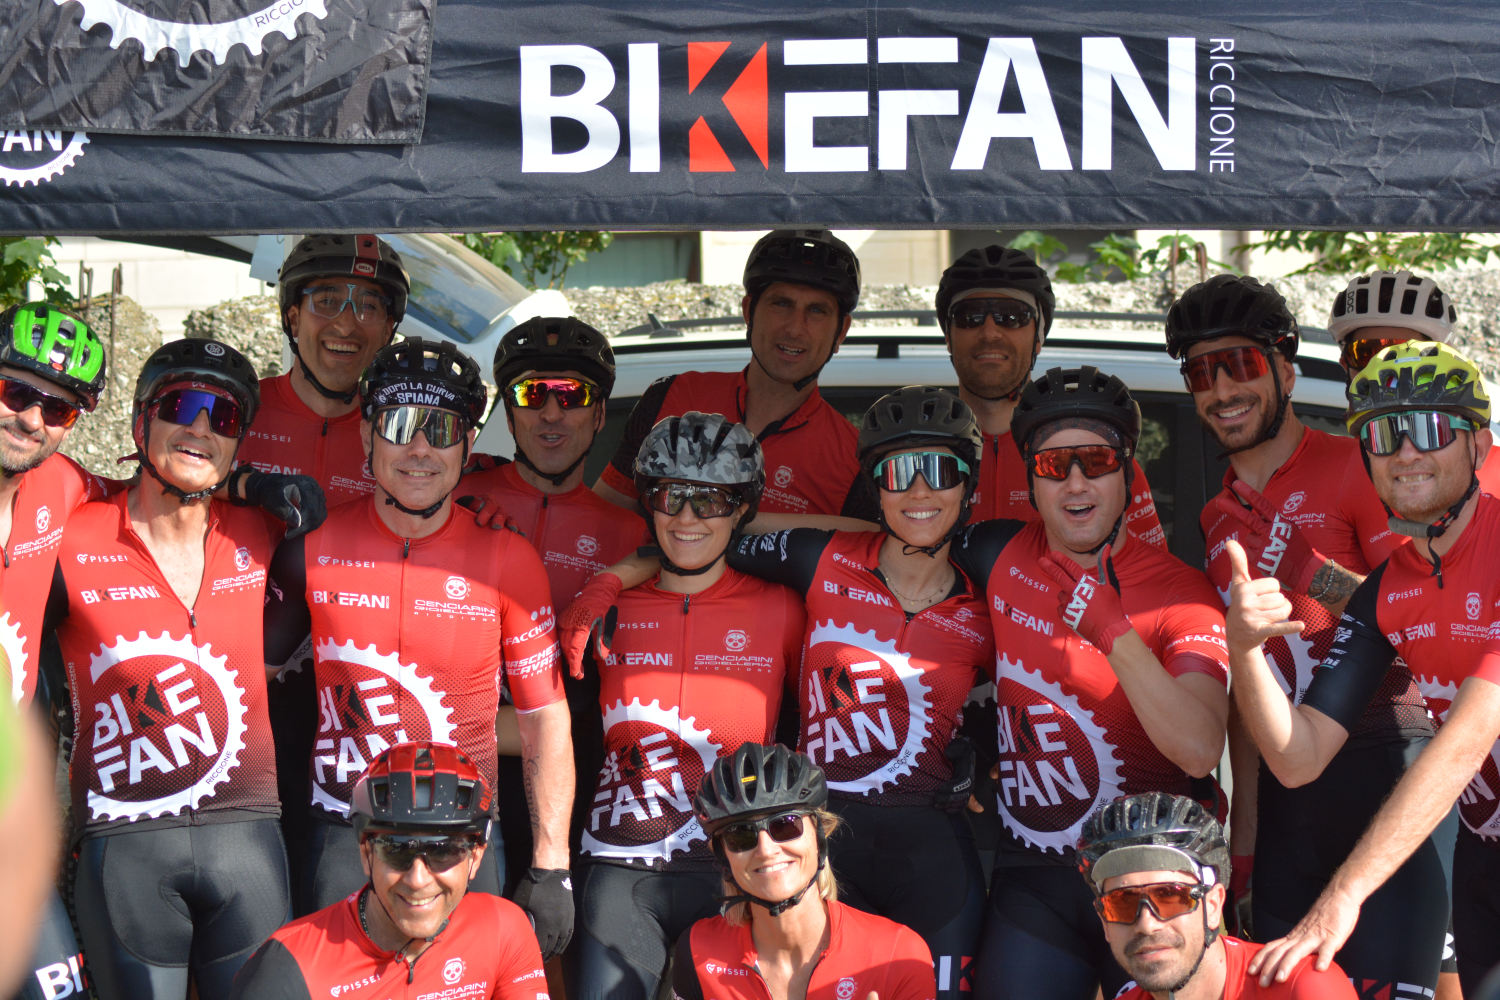 L’armata romagnola del Bikefan pronta a dare battaglia nel SUPERSIX Race e Tour3Regioni